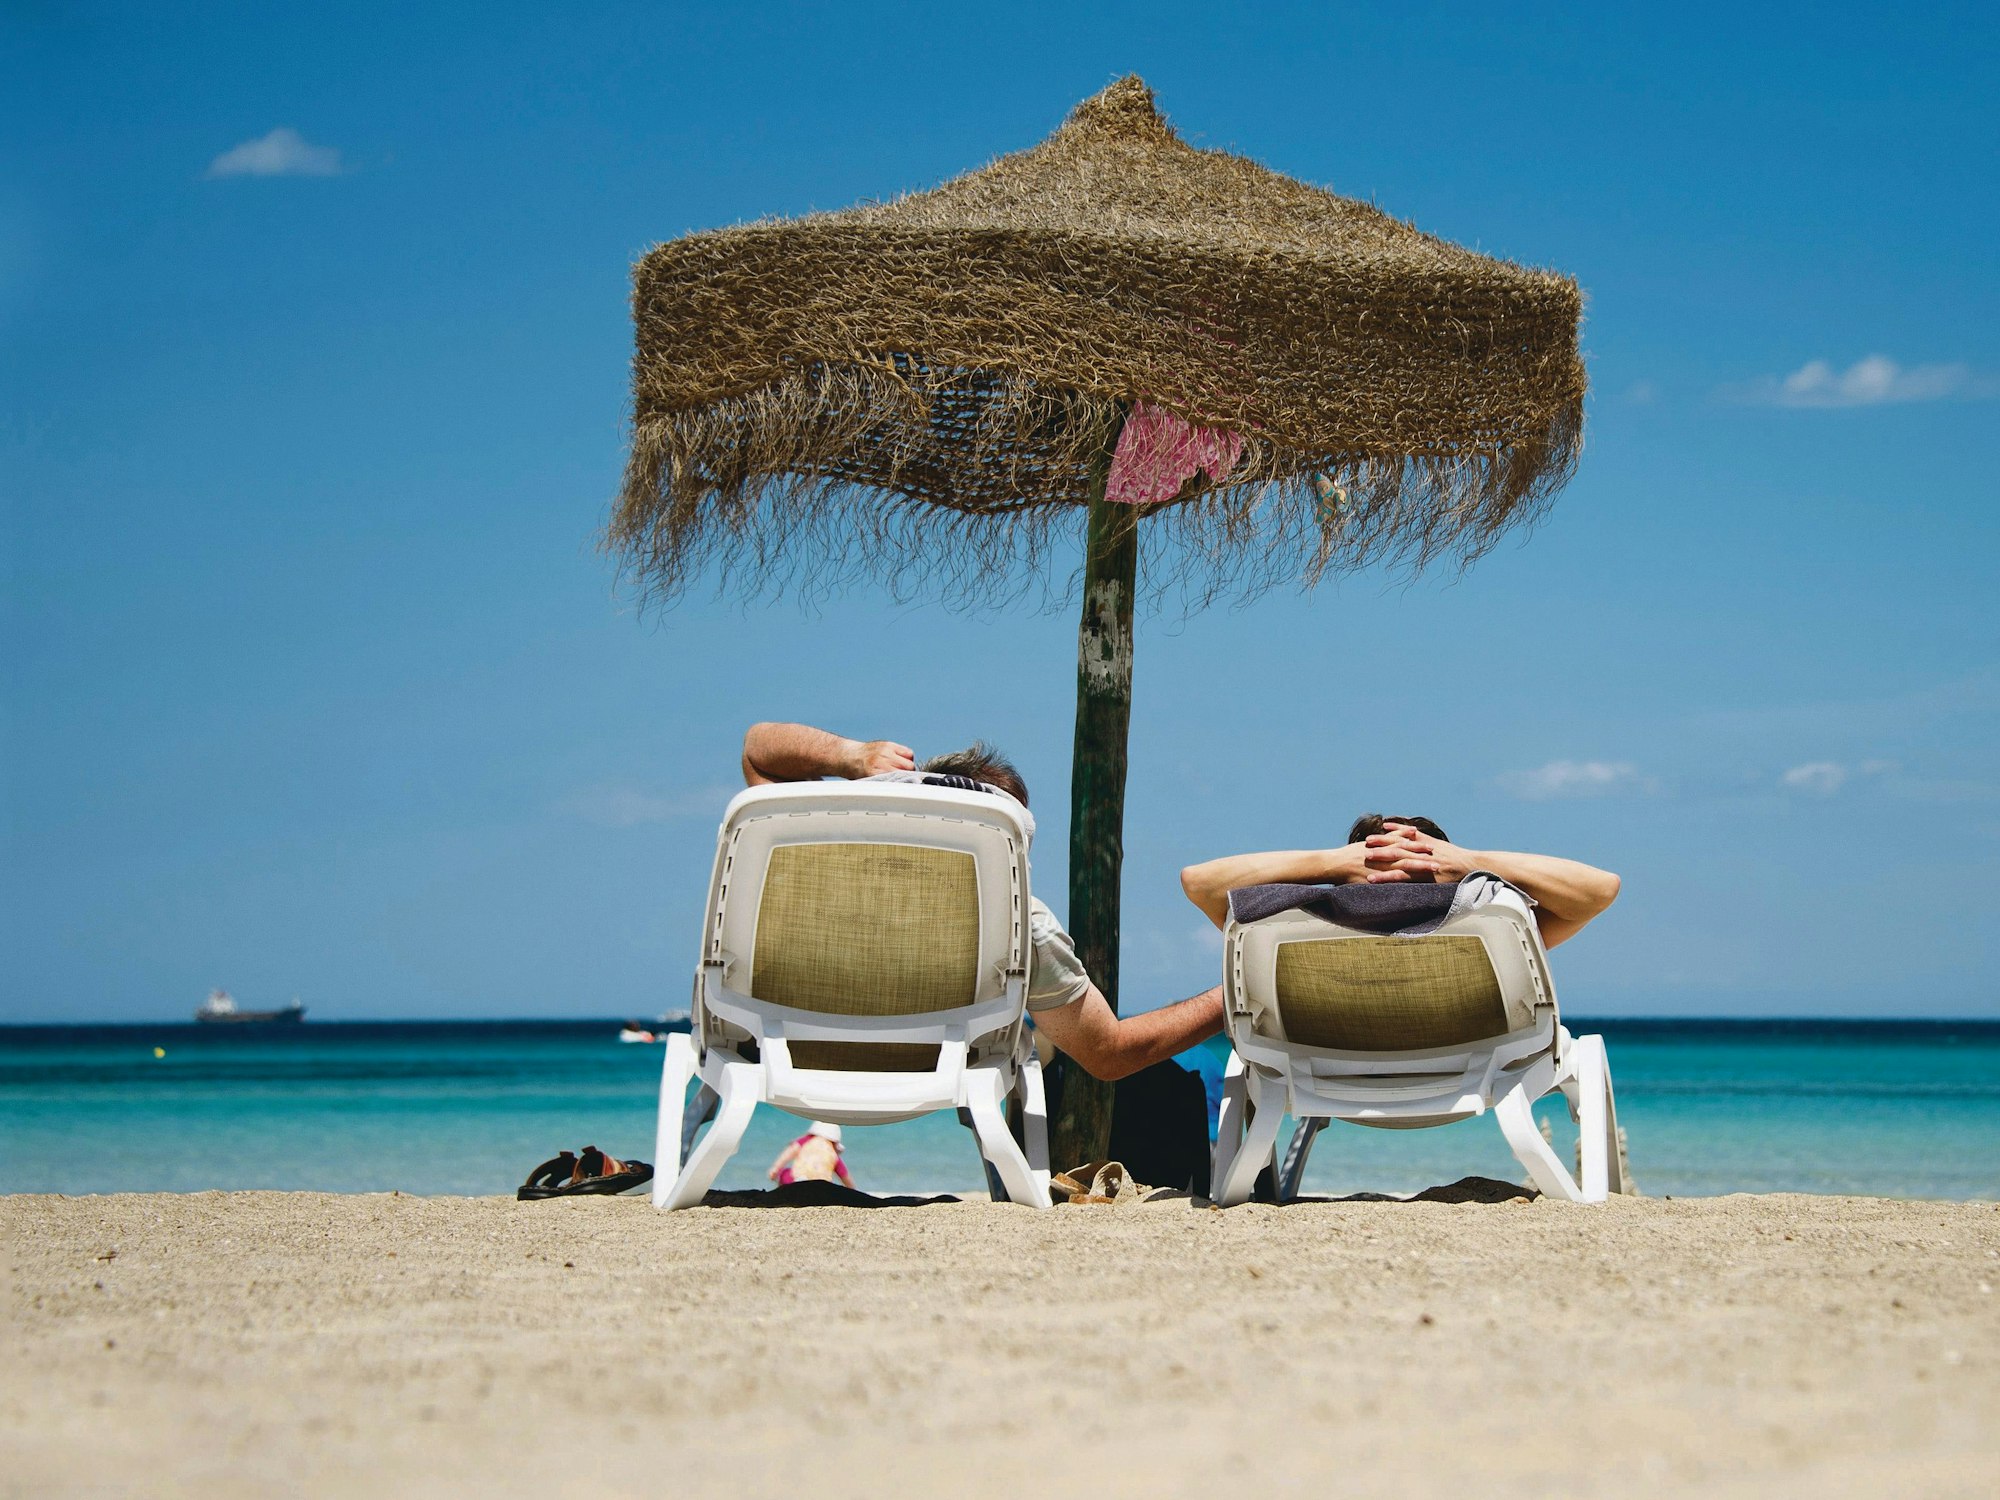 Zwei Urlauber auf Liegen unter einem Sonnenschirm an derPlaja de Muro auf Mallorca.